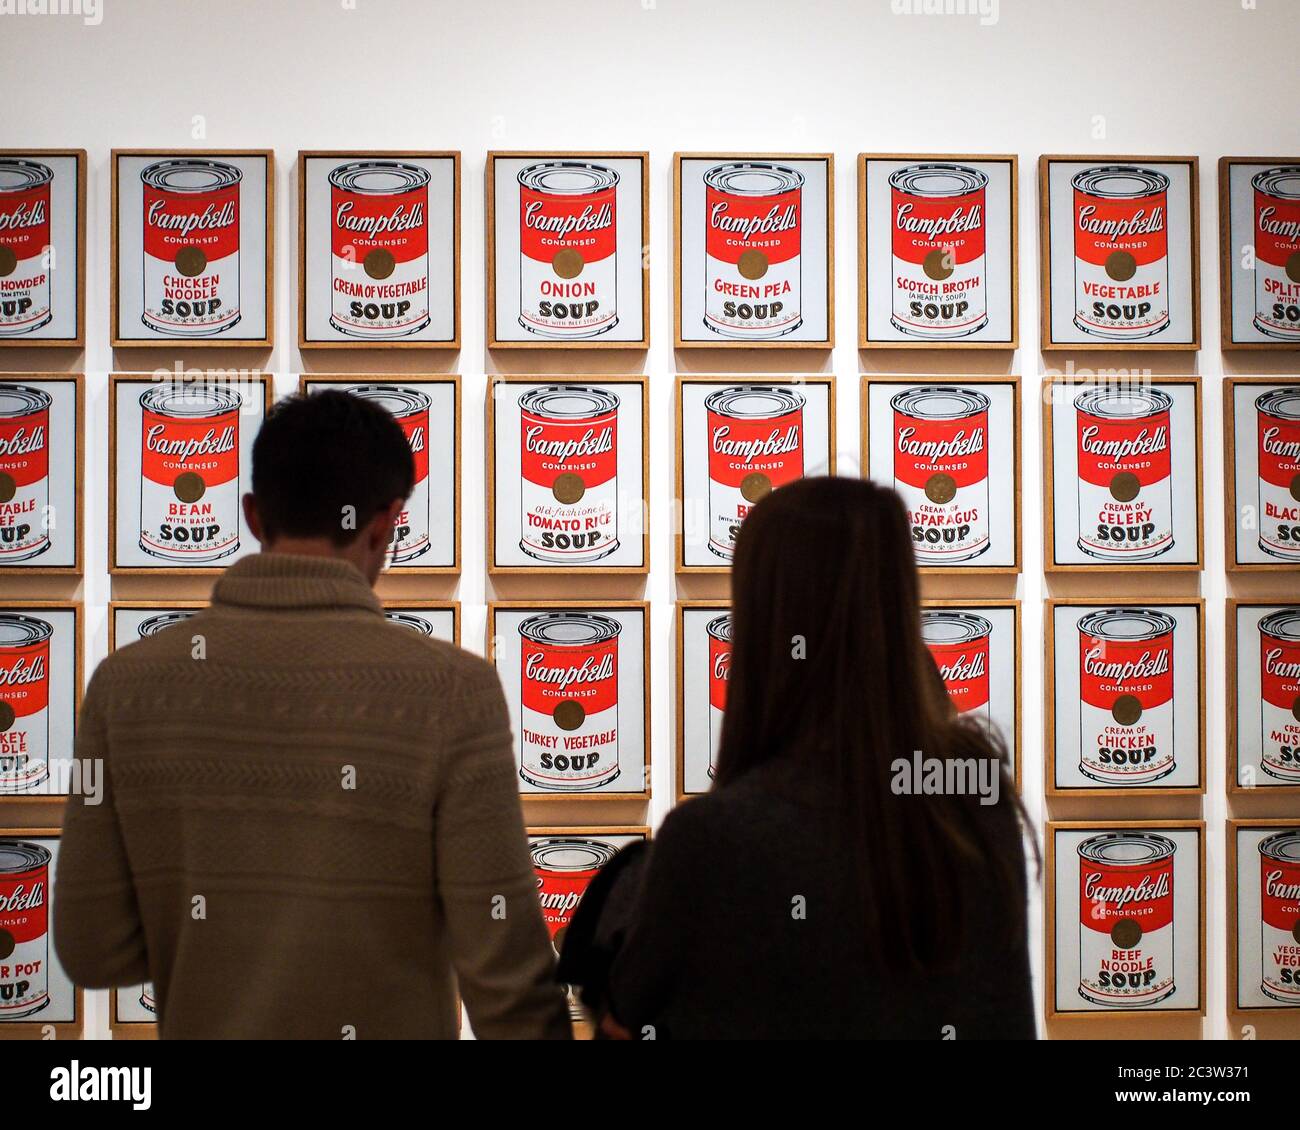 Museum of Modern Art, oder MoMA, Manhattan, New York, Vereinigte Staaten von Amerika - Campbell's Suppendosen, das Kunstwerk von Andy Warhol. Berühmter Popkünstler. Stockfoto